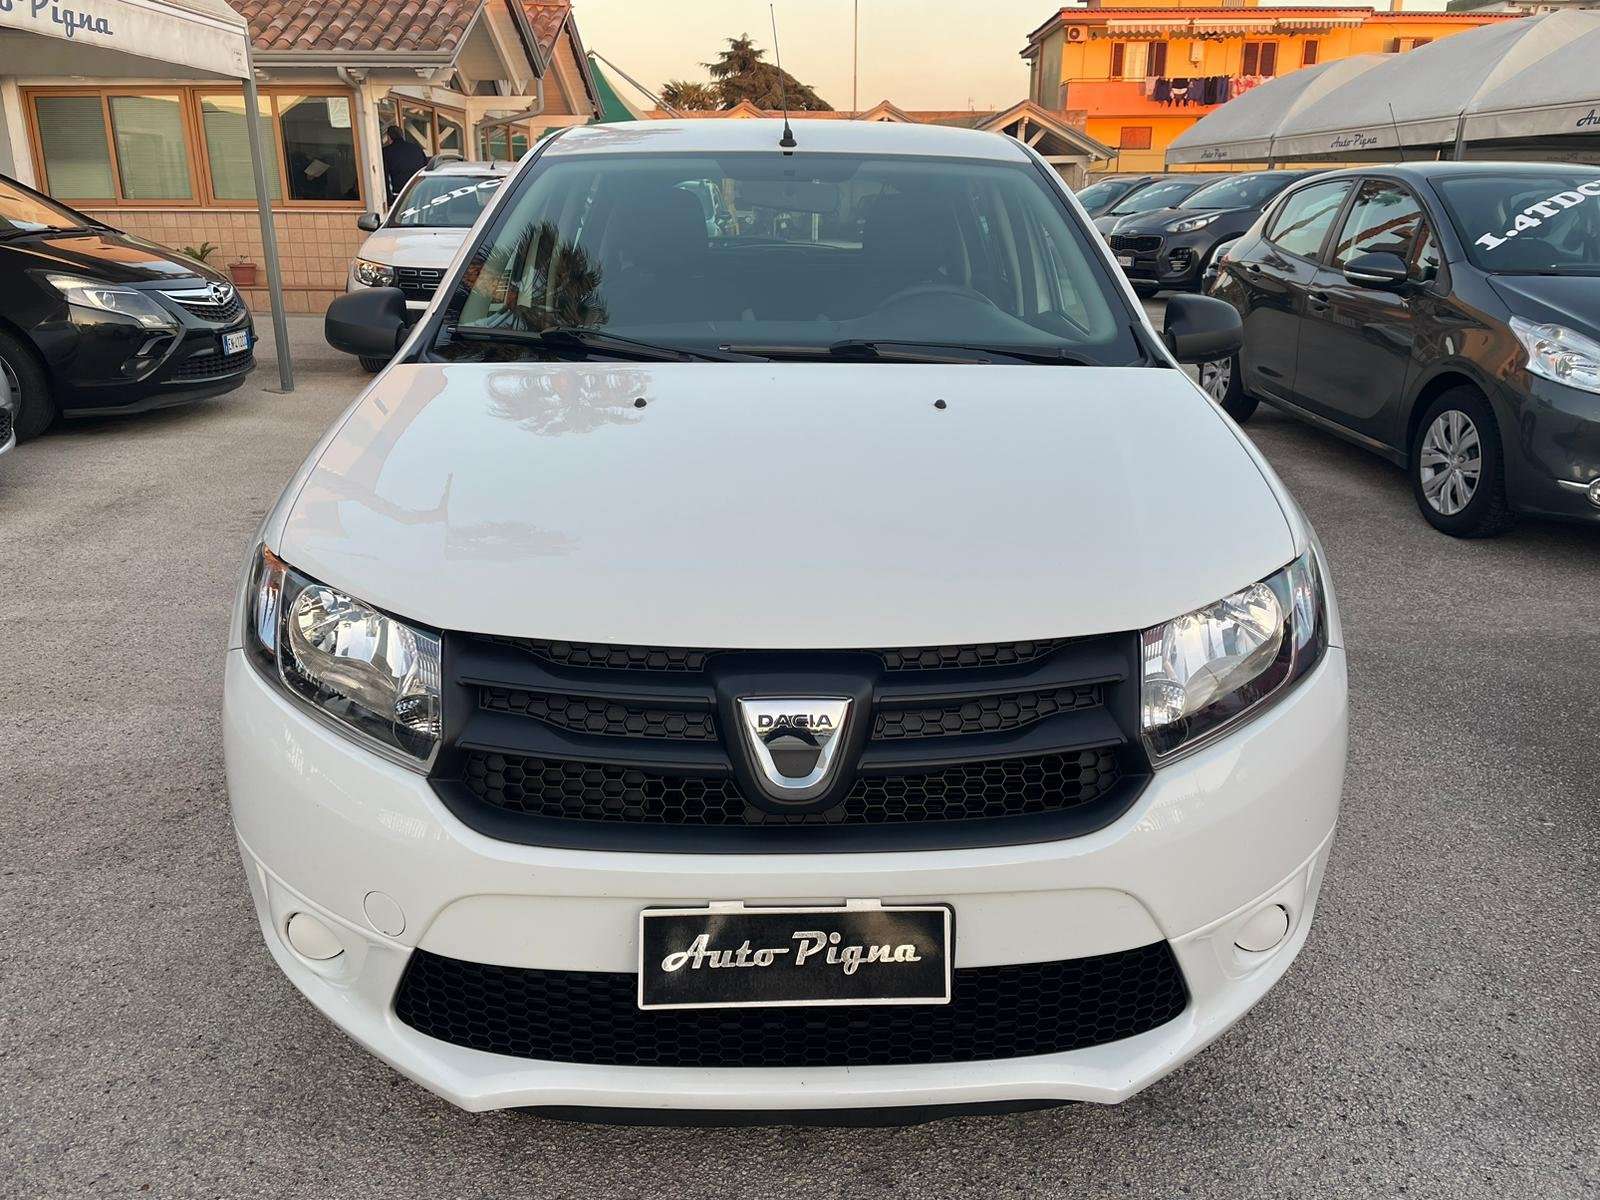 Dacia Sandero Sedan in White used in Giugliano in Campania - Napoli - Na for € 7,500.-